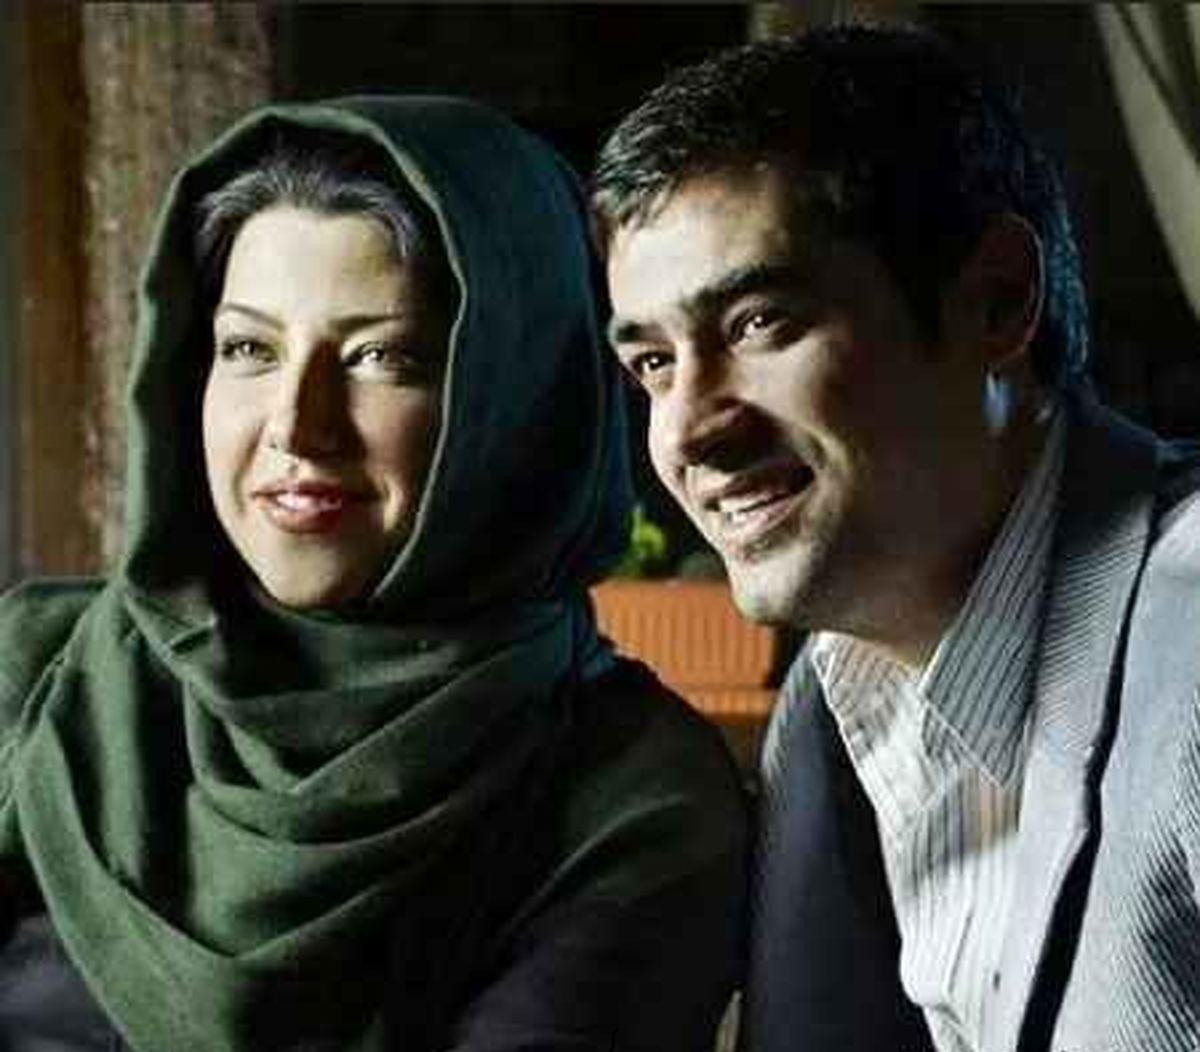 پند و اندرز همسر شهاب حسینی با کمک آلبرکامو | پریچهر قنبری از حقیقت گفت +عکس